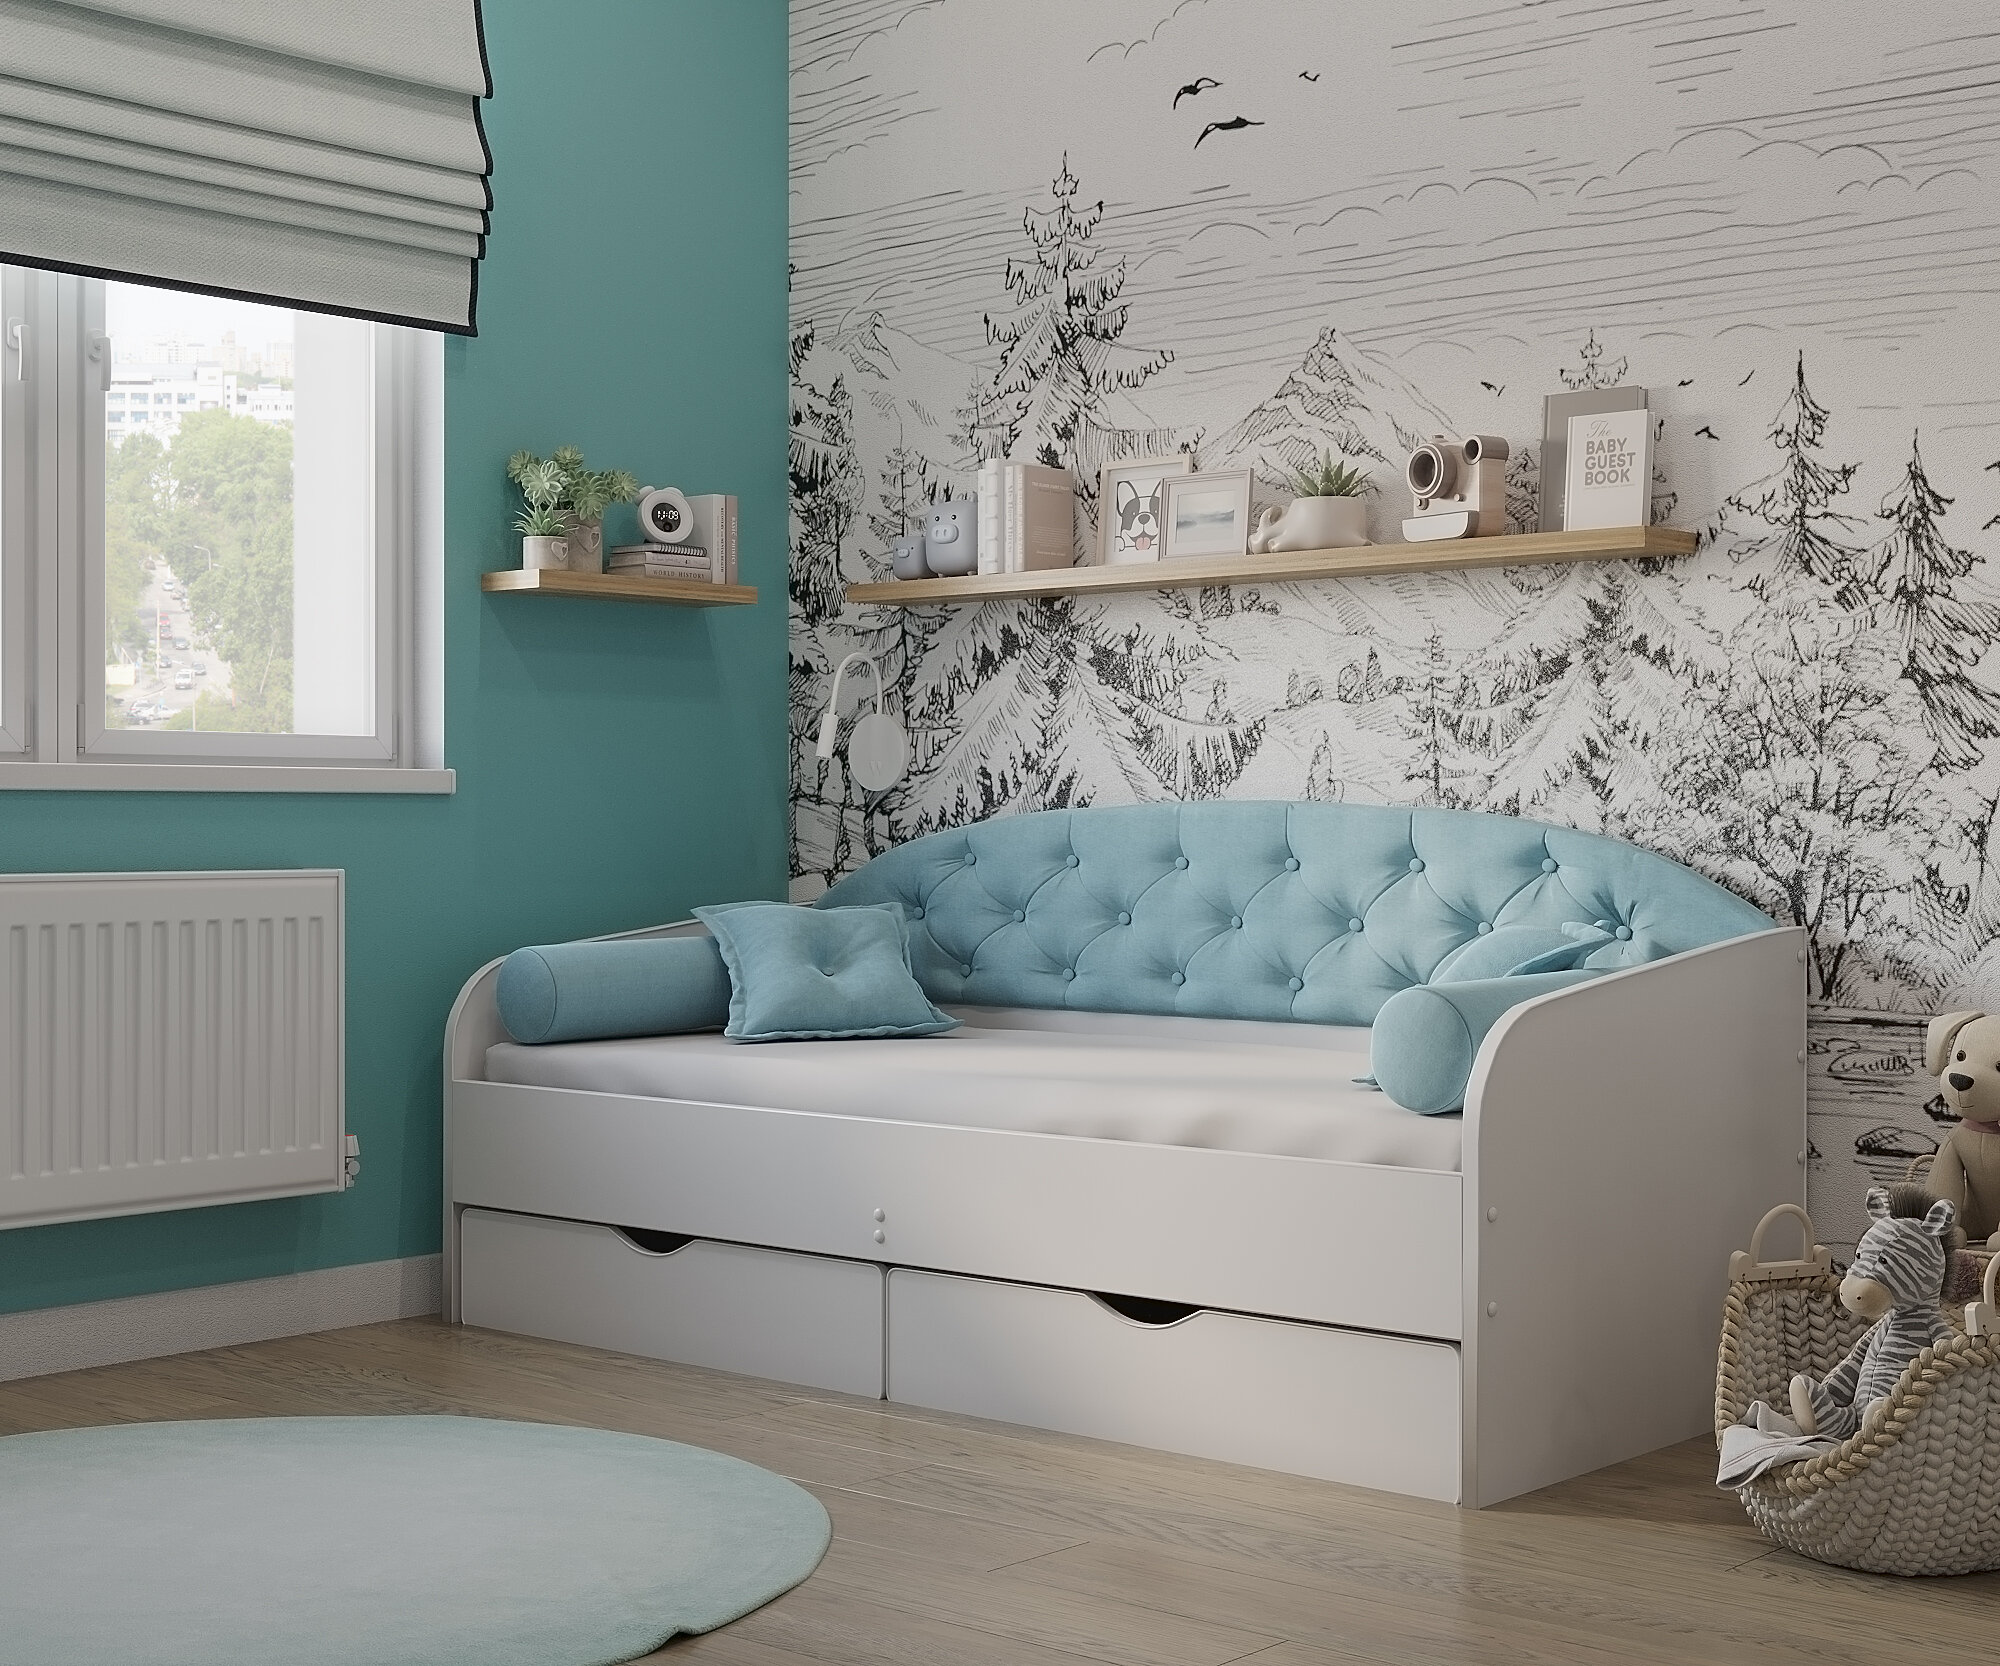 Matrix кровать с мягкой спинкой Sofa 9, 160x80 см. цвет: мята